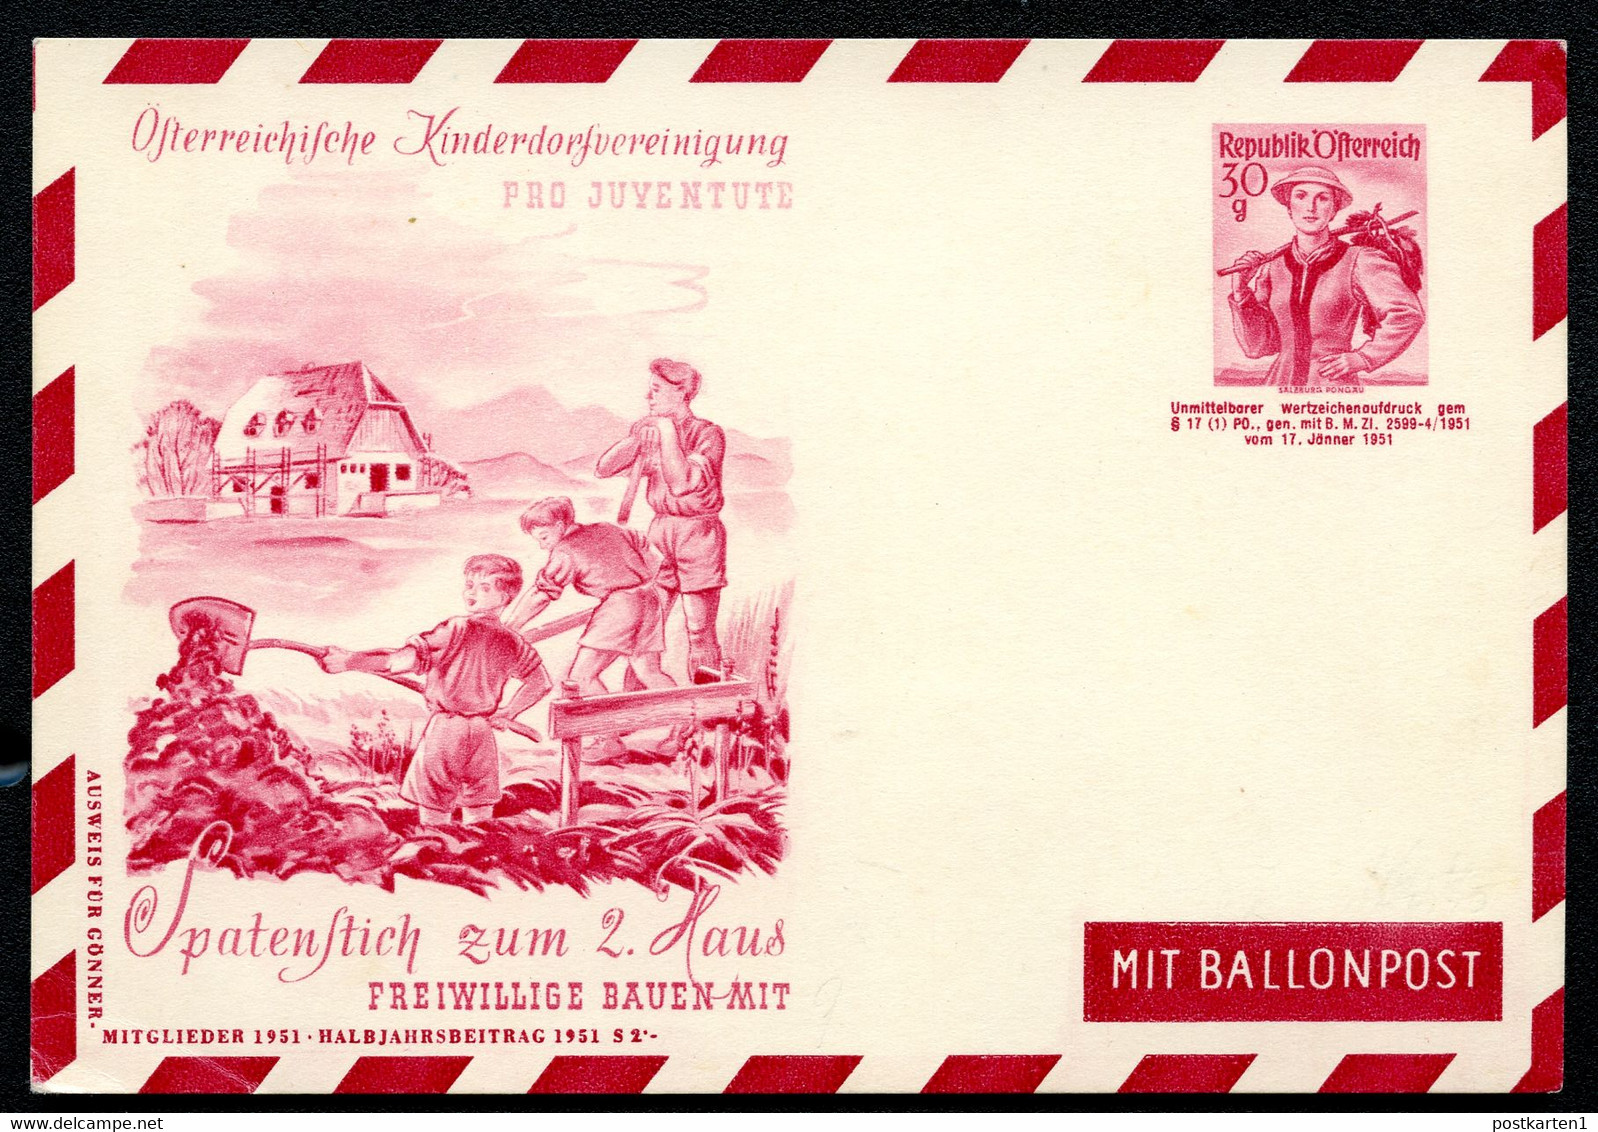 ÖSTERREICH PRIVAT-LUFTPOST-POSTKARTE PLP84 KINDERDORFVEREINIGUNG 1951 - Postkarten